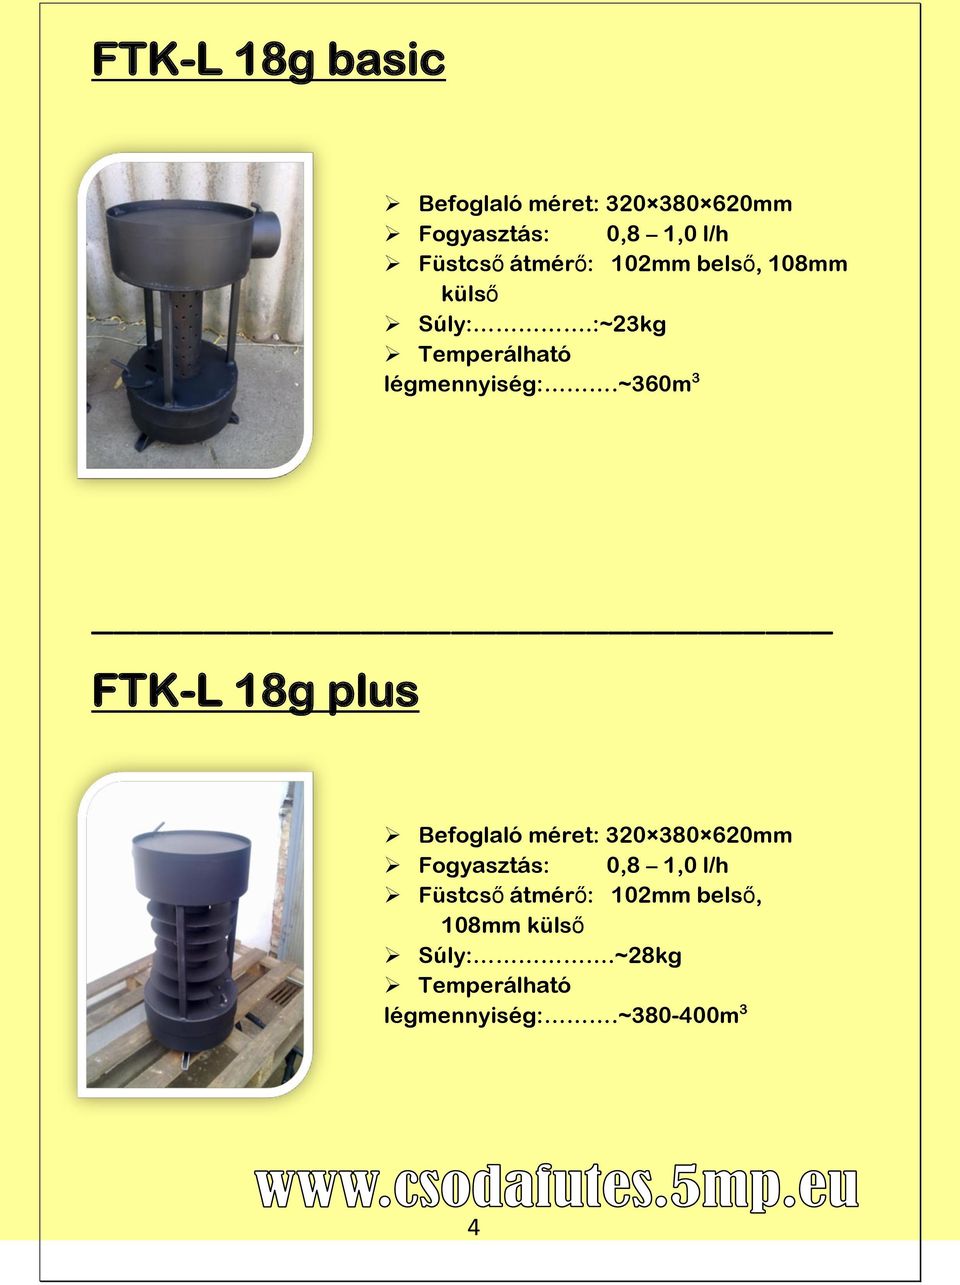 ~360m 3 FTK-L 18g plus Befoglaló méret: 320 380 620mm Fogyasztás: 0,8 1,0